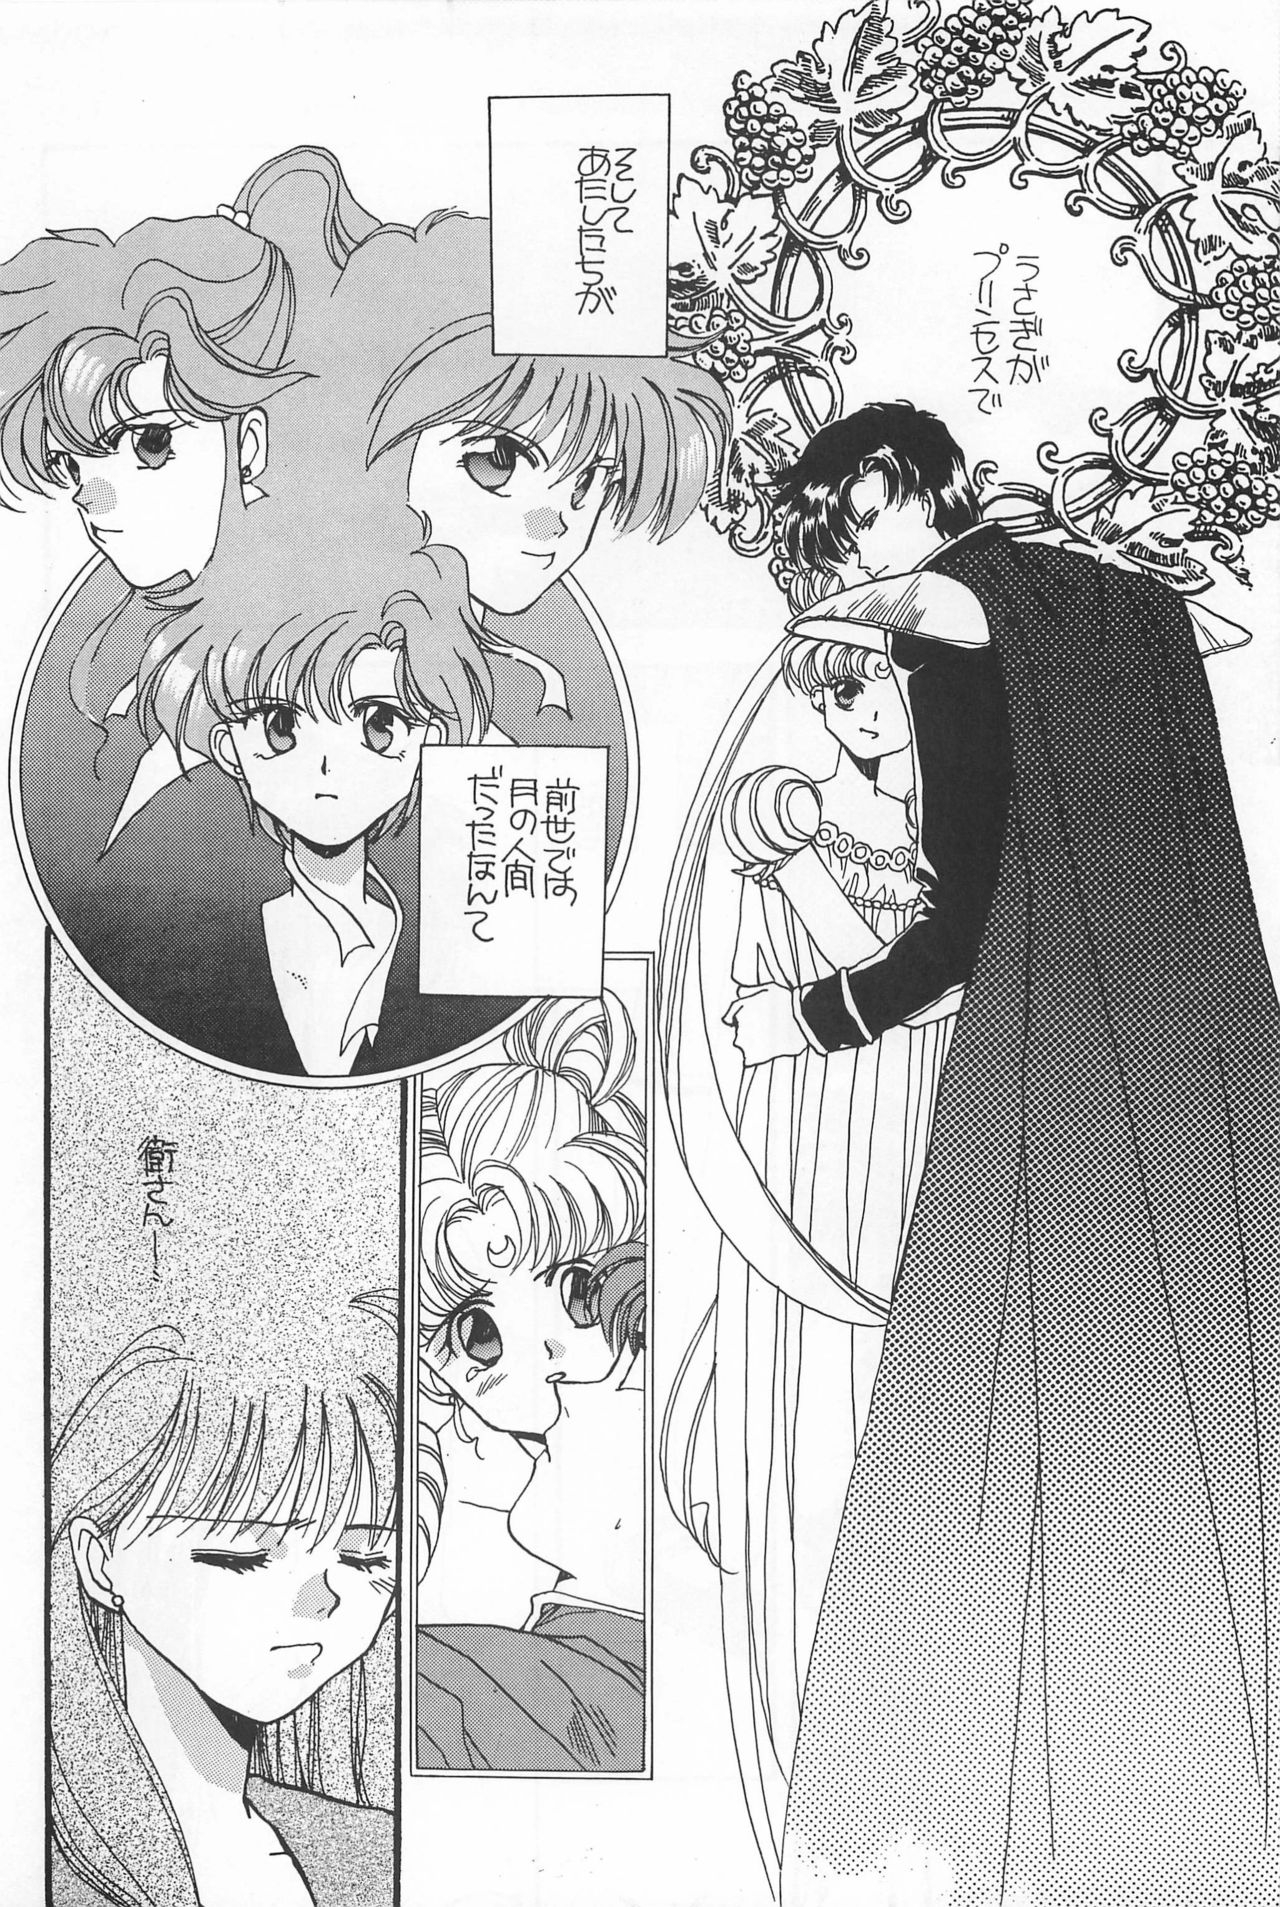 [Hello World (Muttri Moony)] Kaze no You ni Yume no You ni - Sailor Moon Collection (Sailor Moon) 121